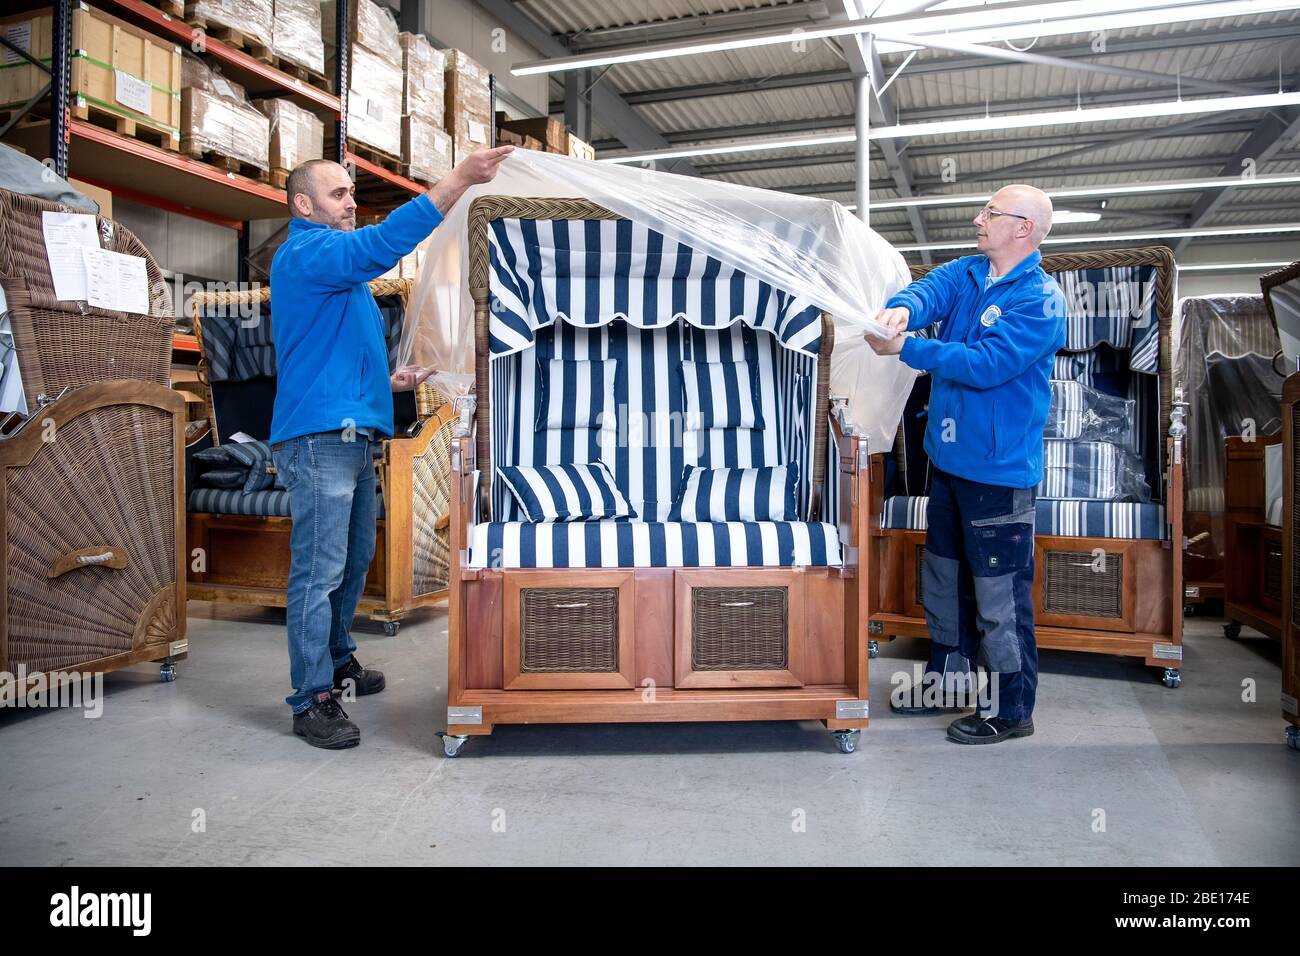 Buxtehude, Germania. 07 aprile 2020. Una sedia da spiaggia in vimini  rifinita è confezionata nella fabbrica di sedie da spiaggia in vimini  Buxtehude. La domanda di sedie da spiaggia in vimini è